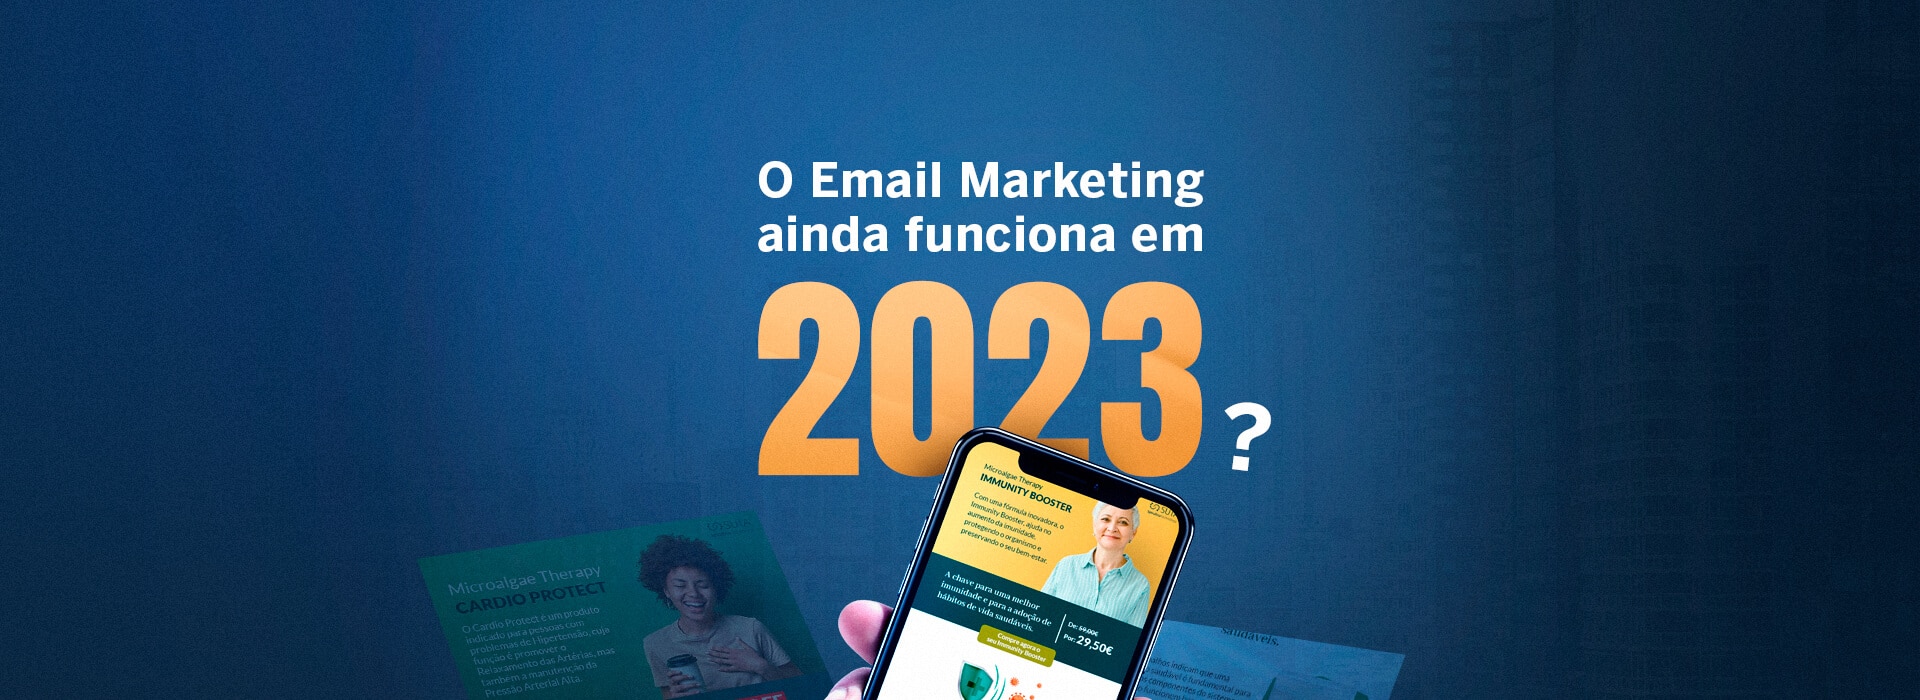 O Email Marketing ainda funciona em 2023?